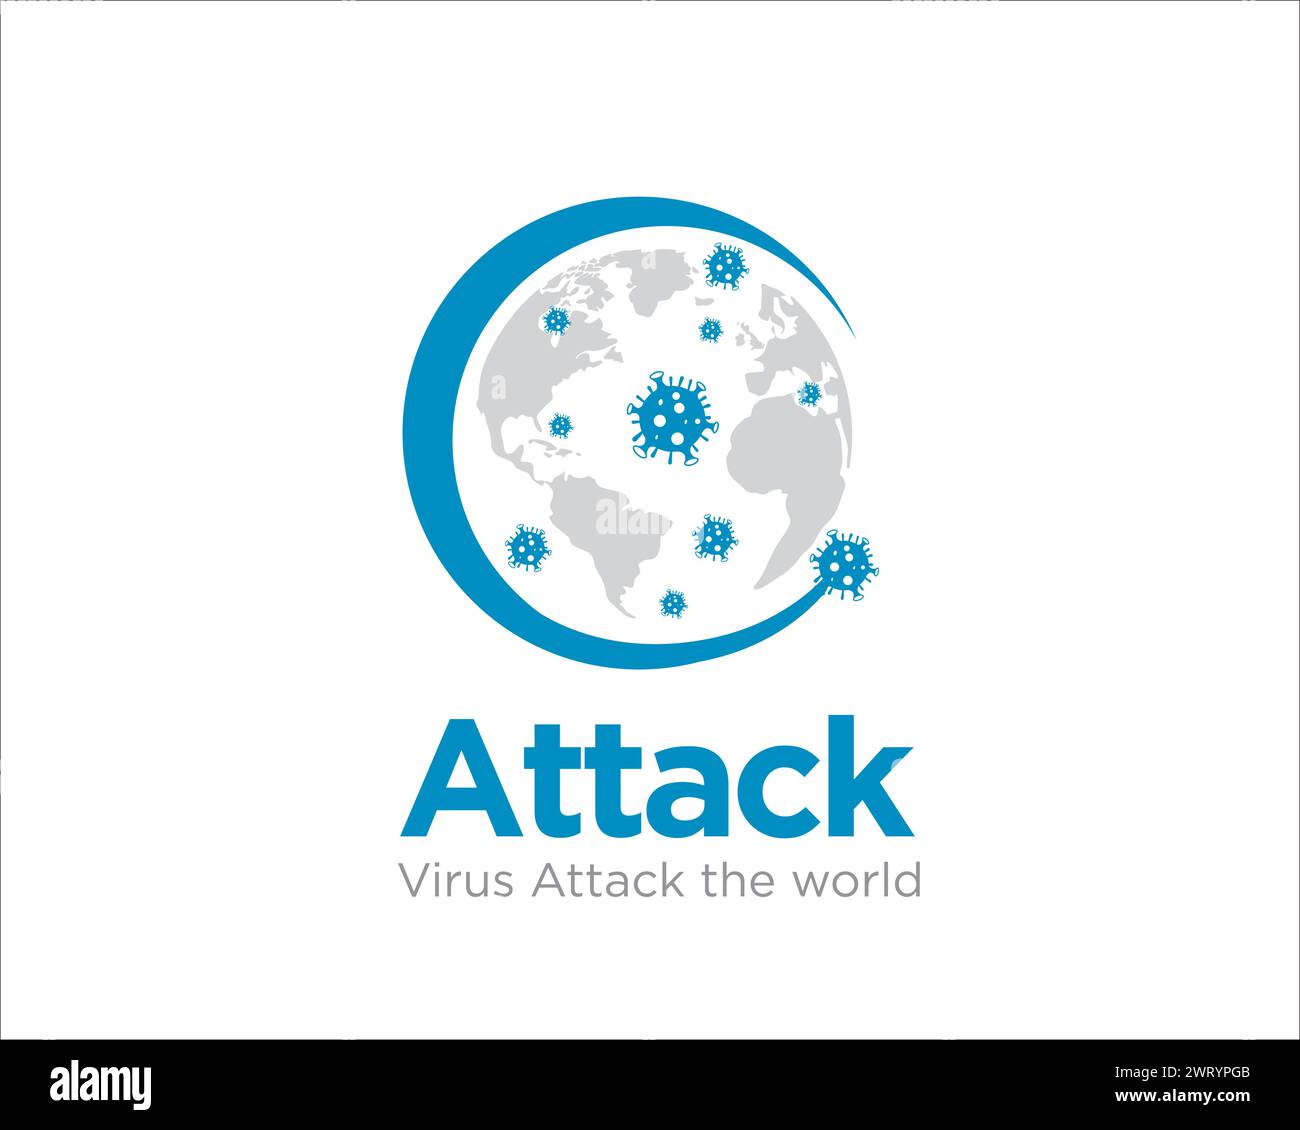 virus attack les conceptions de logo de santé mondiale pour les services médicaux dans le monde Illustration de Vecteur